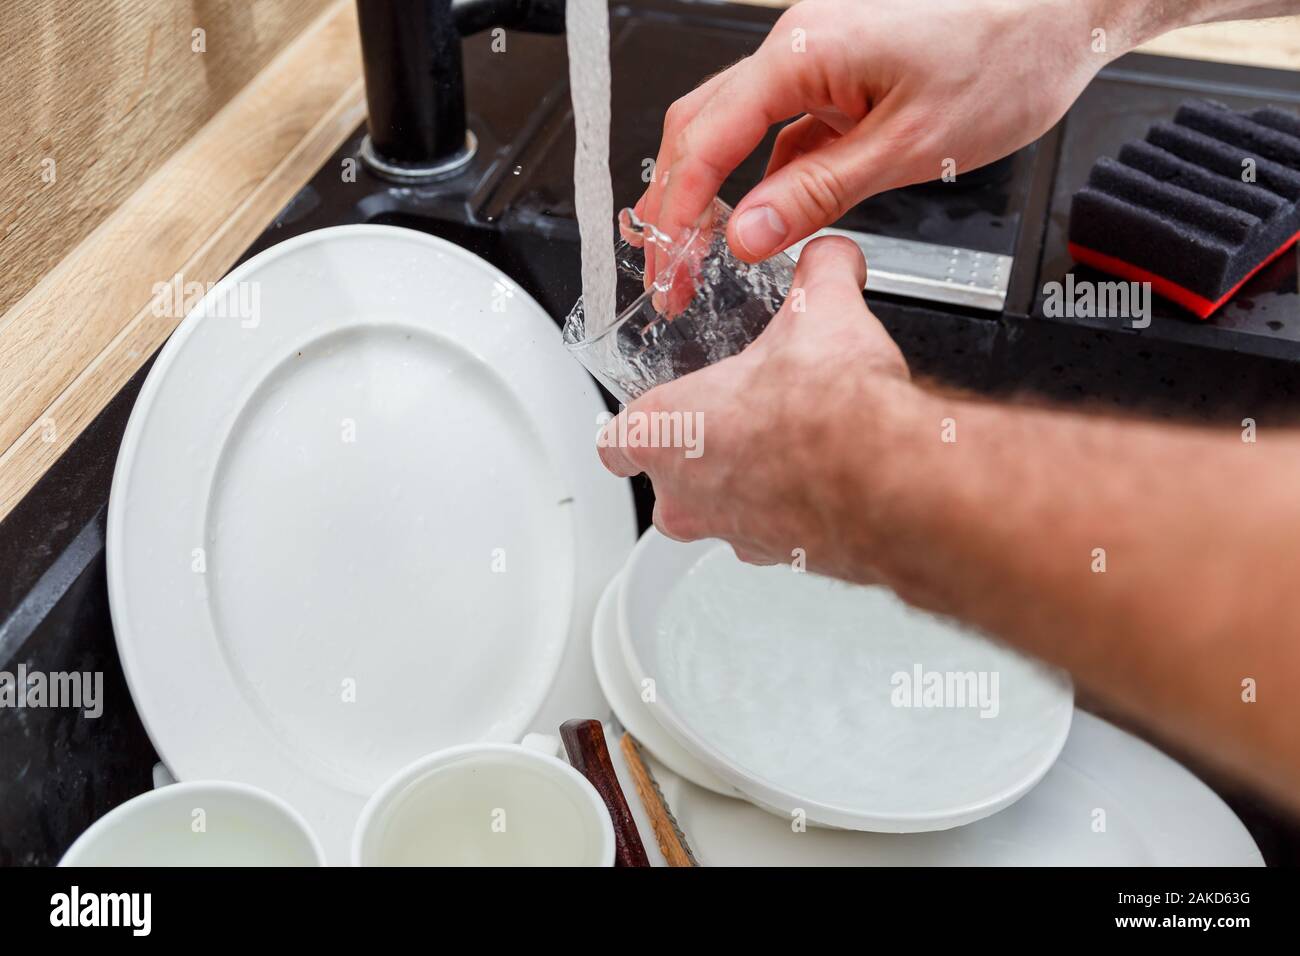 Lavar los platos - el hombre de manos en guantes de vidrio lavado bajo el grifo de agua en el fregadero. Foto de stock